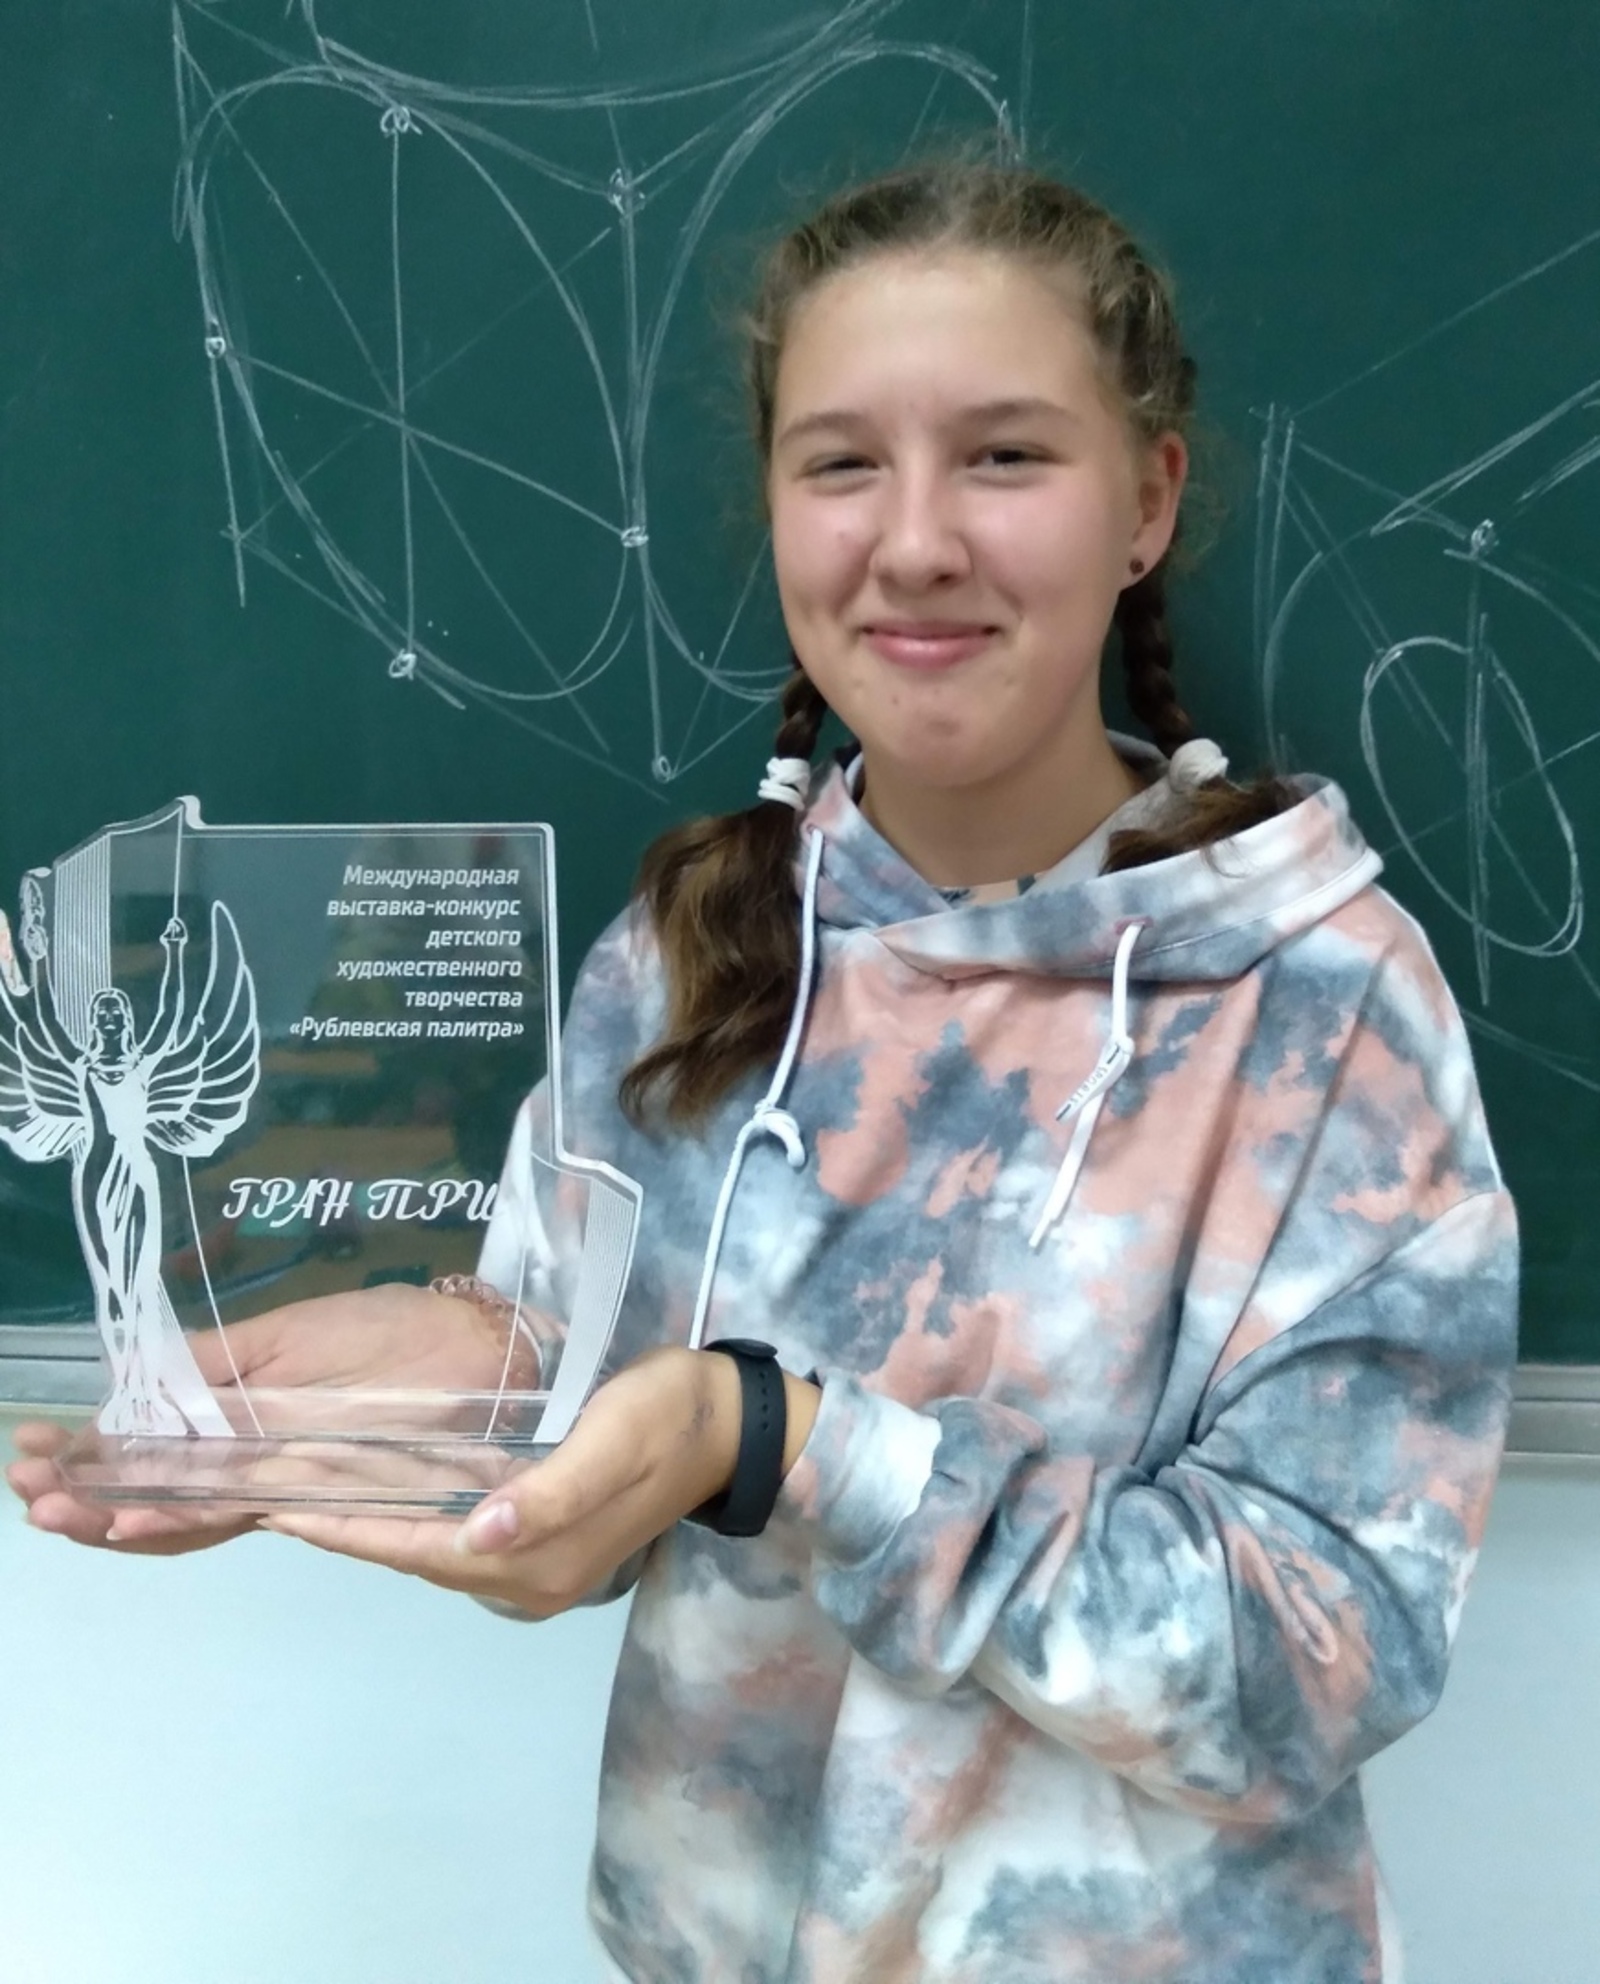 Ученица ДШИ Благовещенска получила Гран-при конкурса «Рублевская палитра»